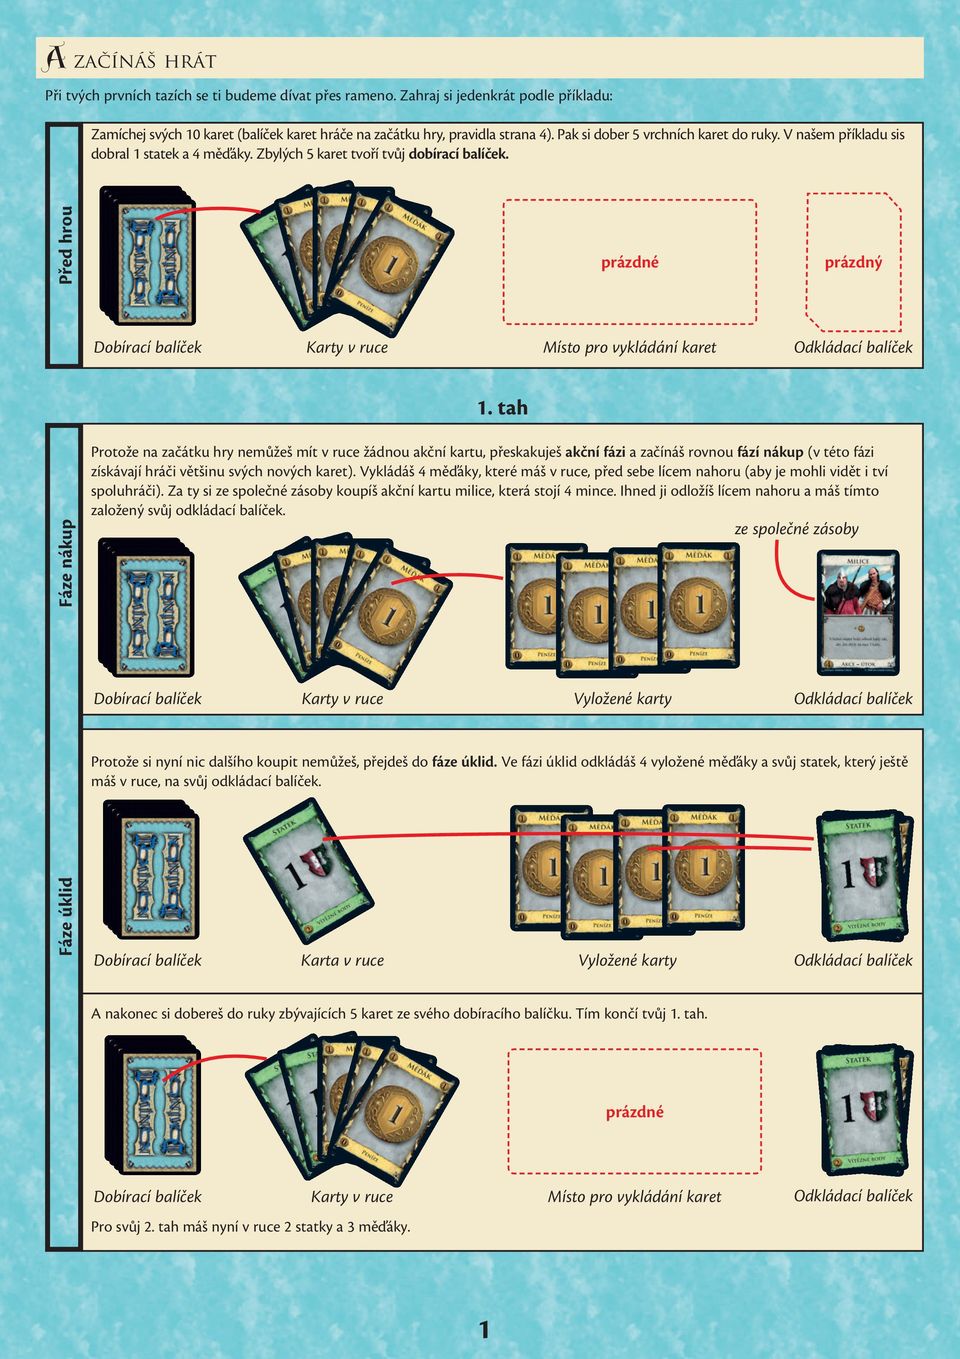 Před hrou prázdné Dobírací balíček Karty v ruce Místo pro vykládání karet Odkládací balíček 1.